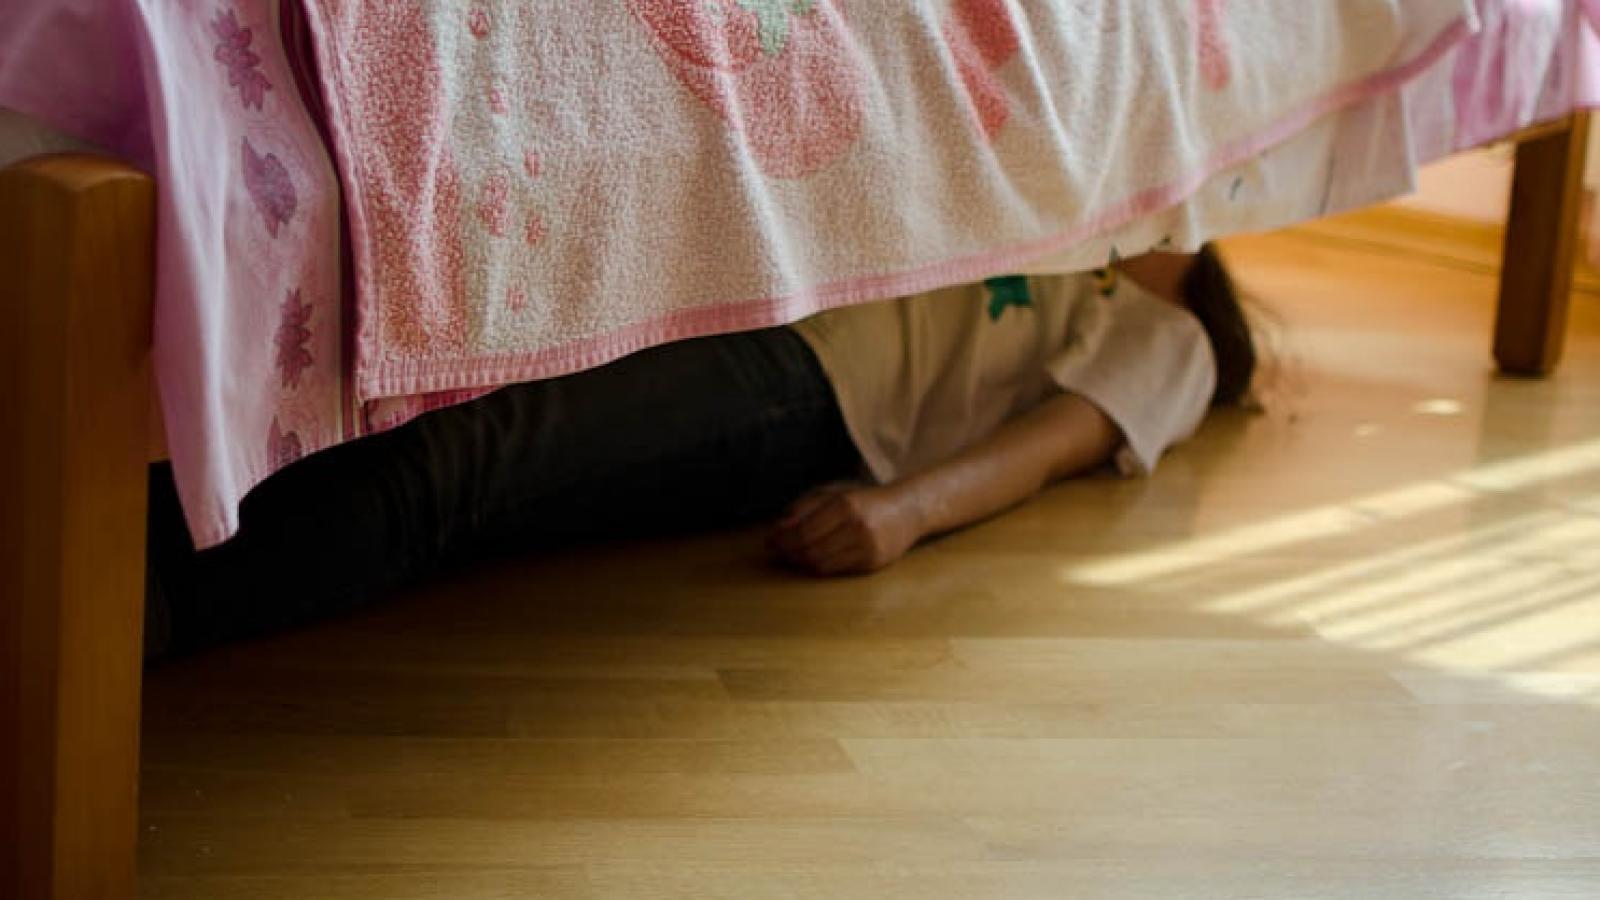 Женщина в федеральном розыске пряталась под кроватью